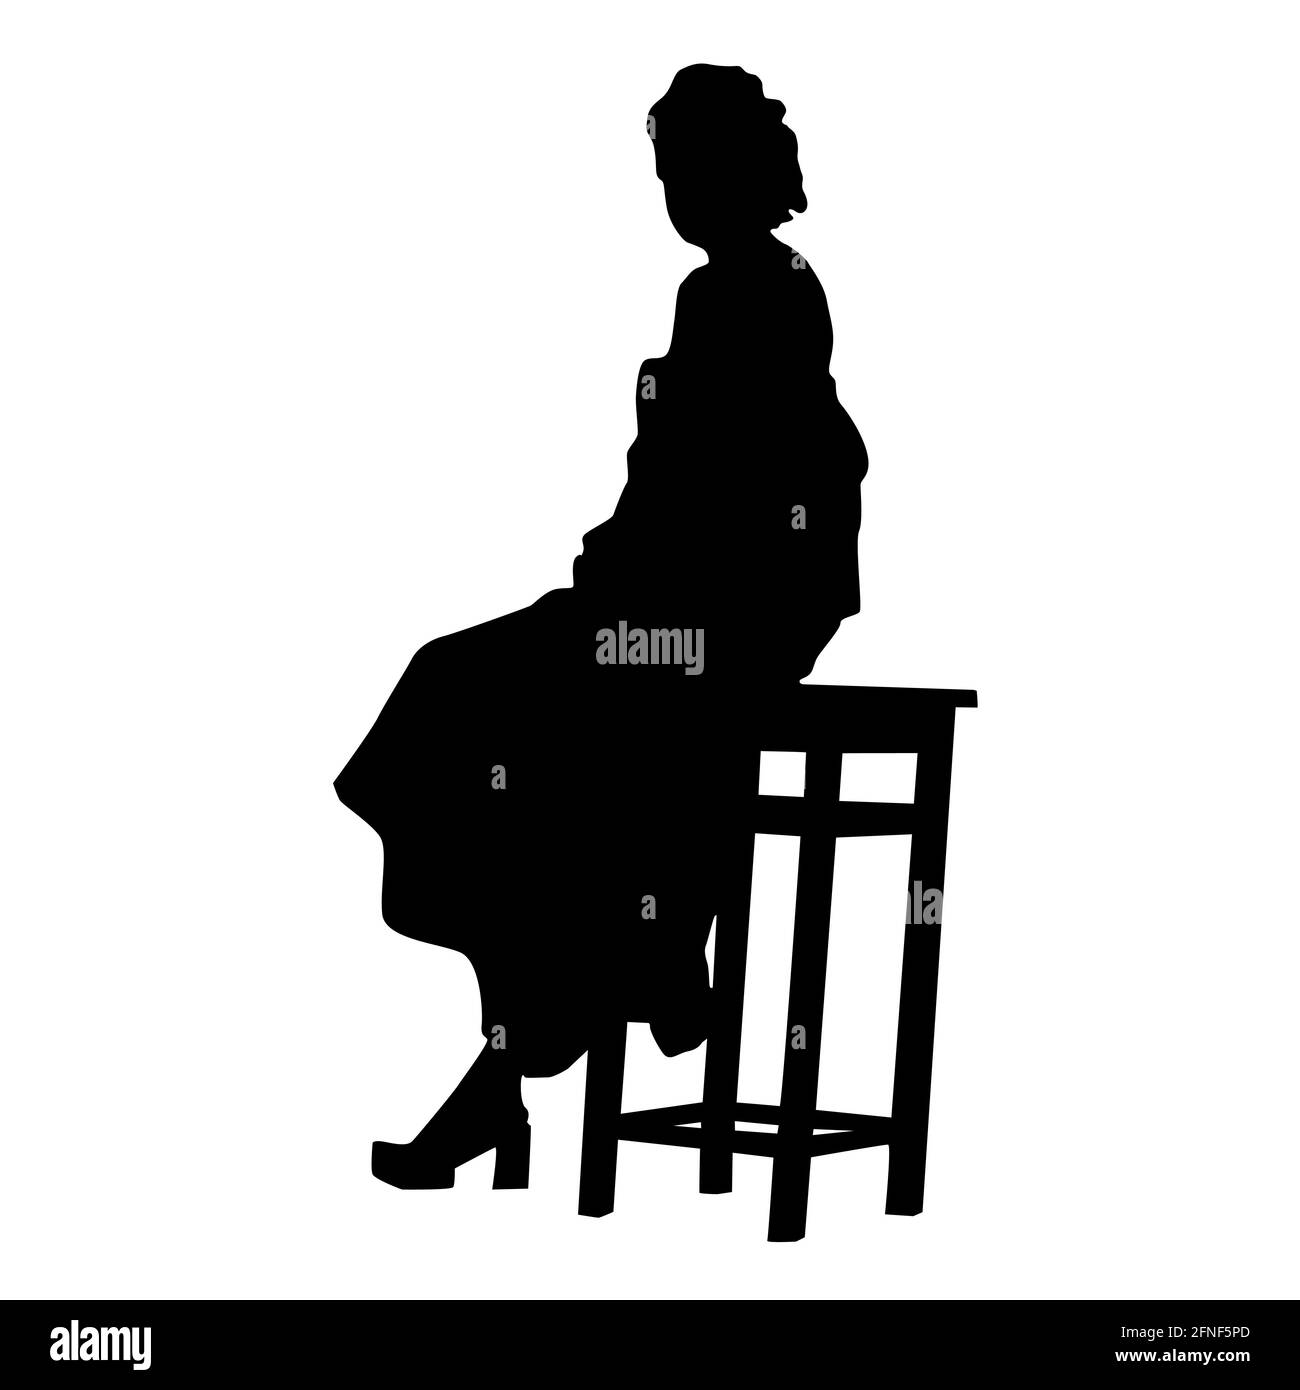 Silhouette von lockig elegante Frau in einem Kleid auf einem hohen Hocker sitzen. Schwarz grau auf weißem Hintergrund. Vektorgrafik. Stock Vektor